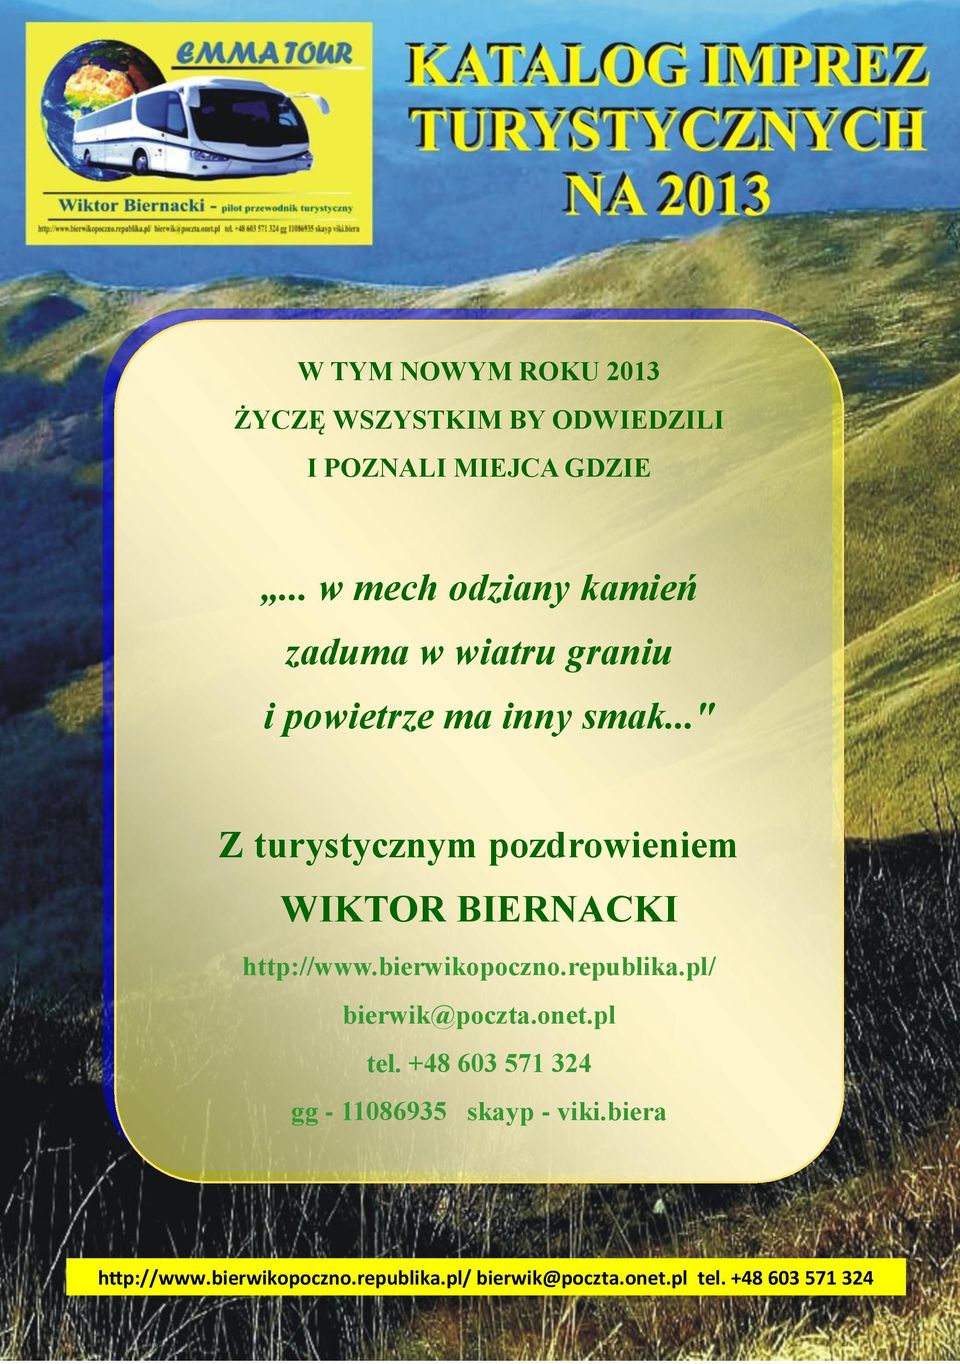 .." Z turystycznym pozdrowieniem WIKTOR BIERNACKI http://www.bierwikopoczno.